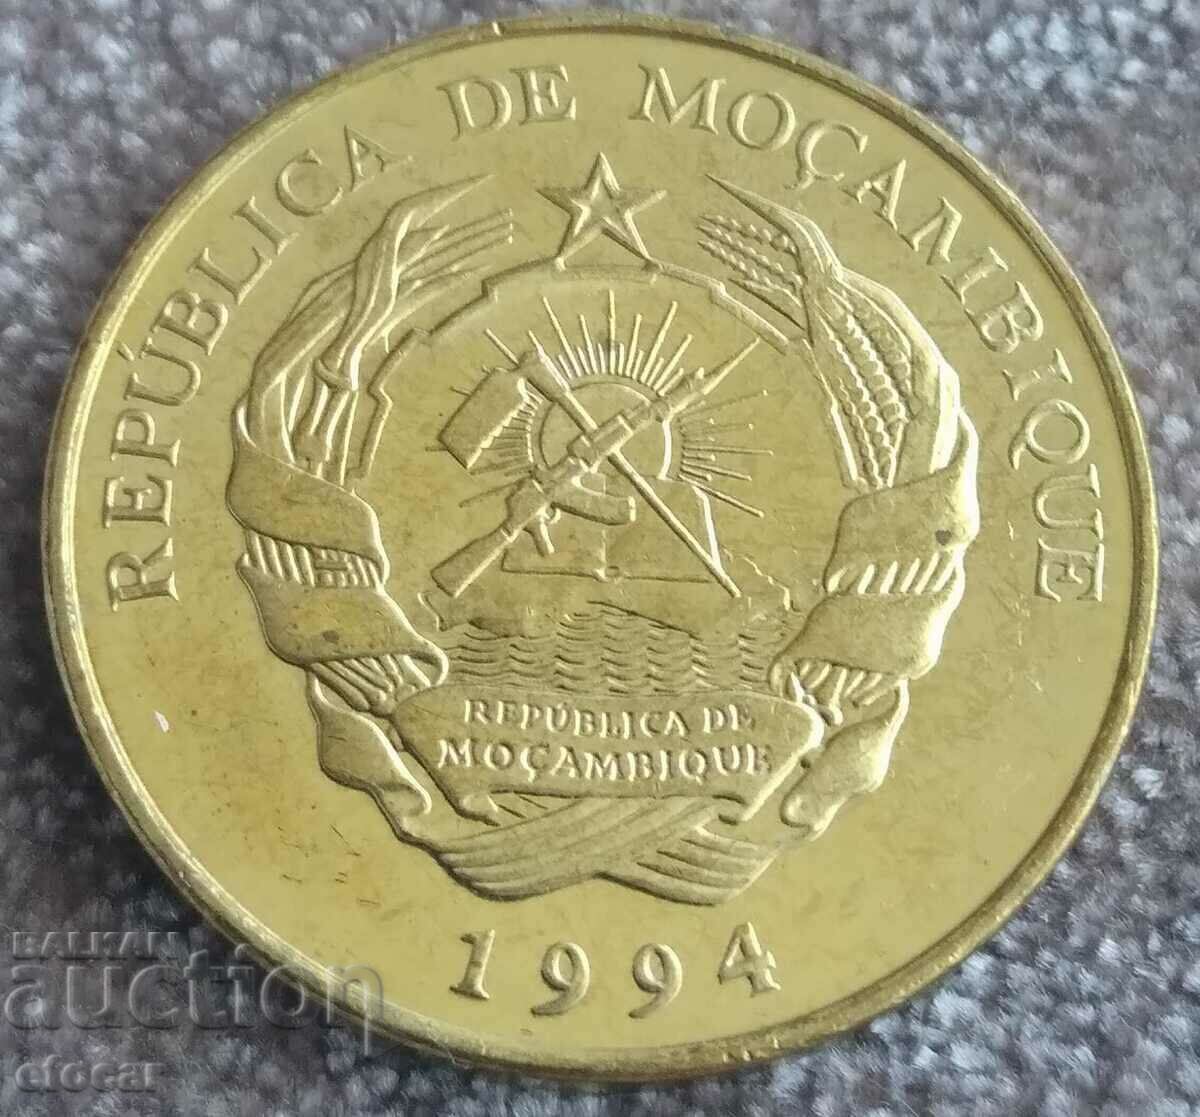 10 meticals Mozambique 1994